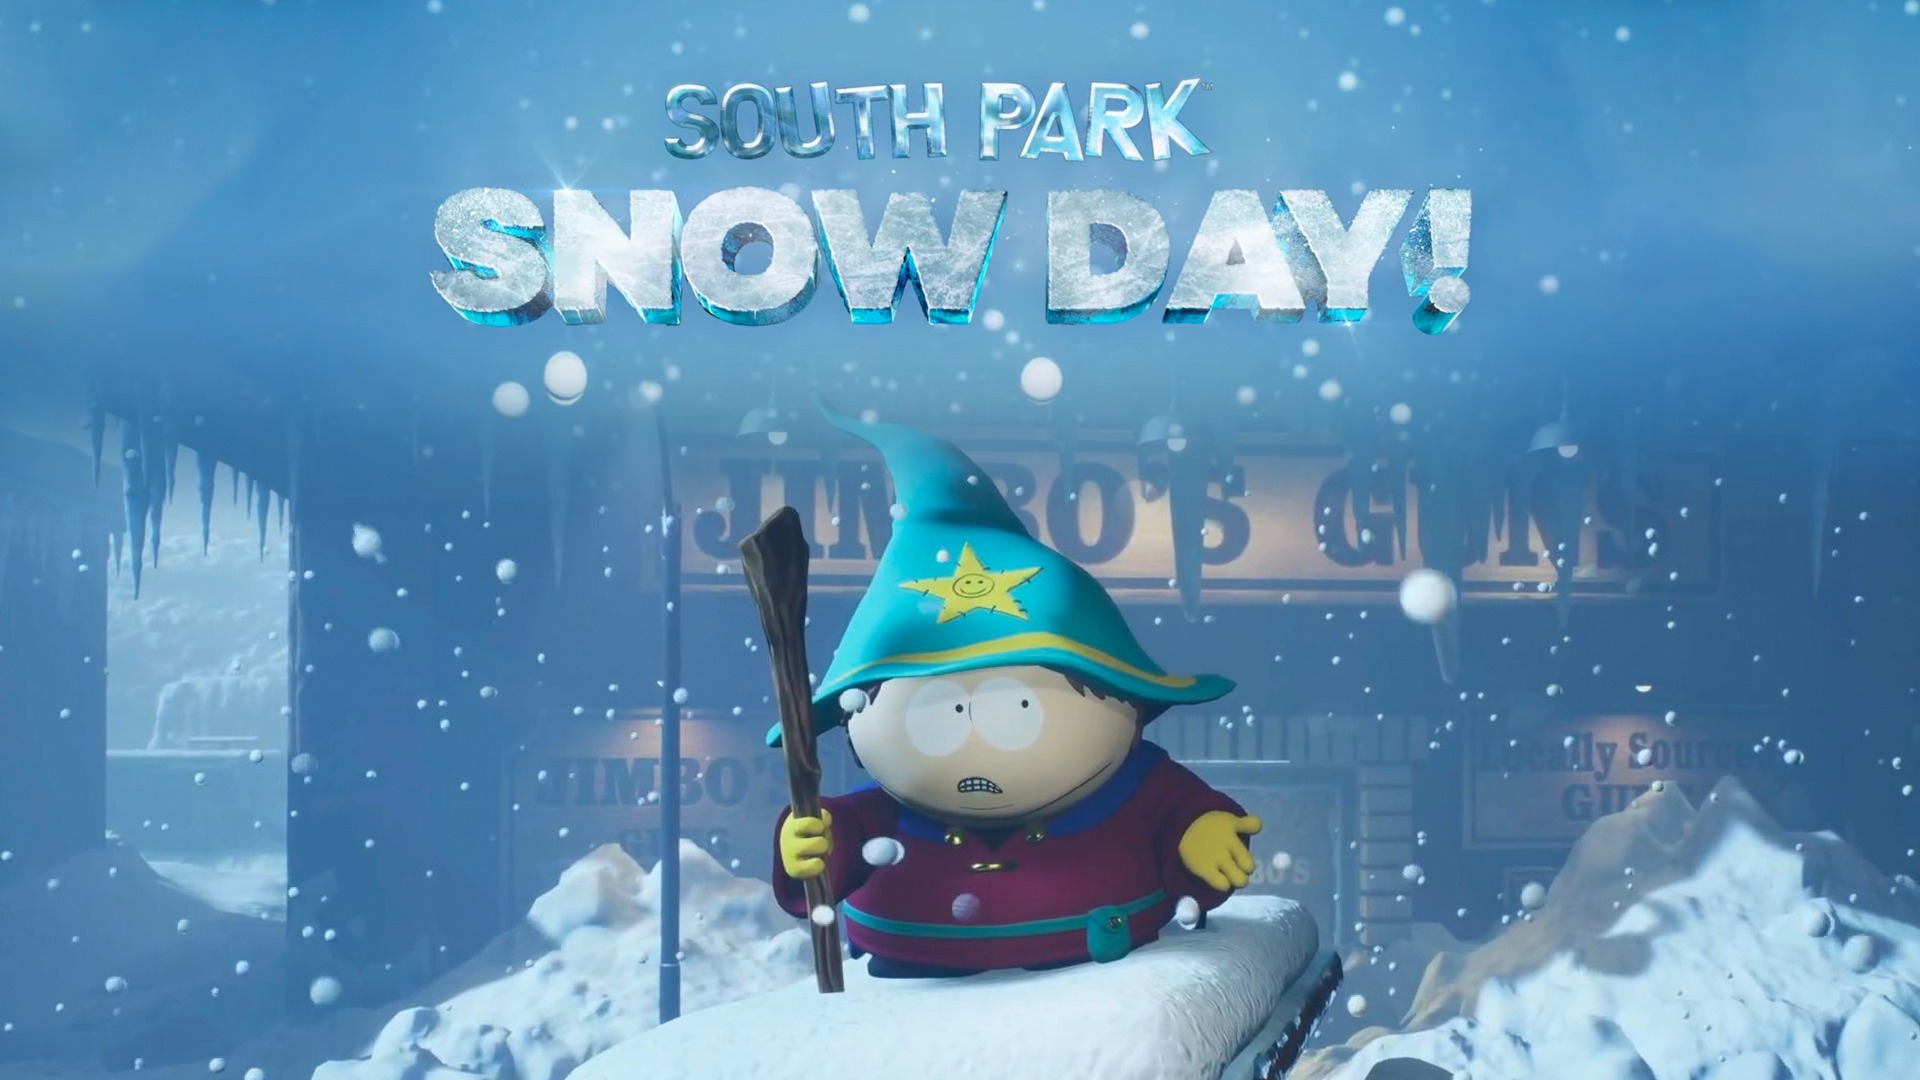 "South Park : Snow Day !" se dévoile et ce n'est pas très excitant... M'voyez ? 